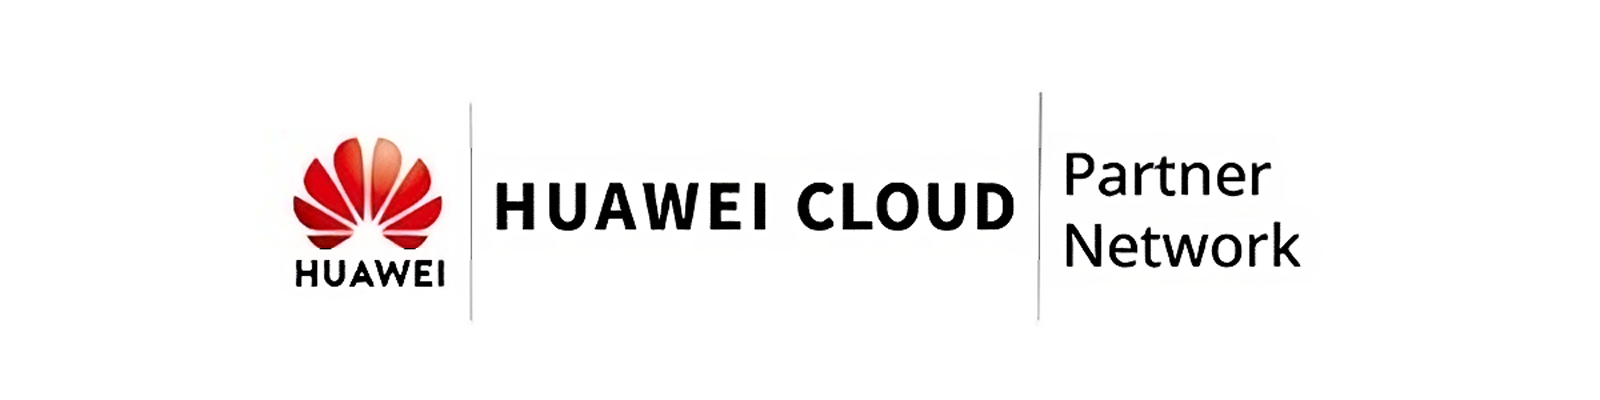 Huawei Cloud Partner